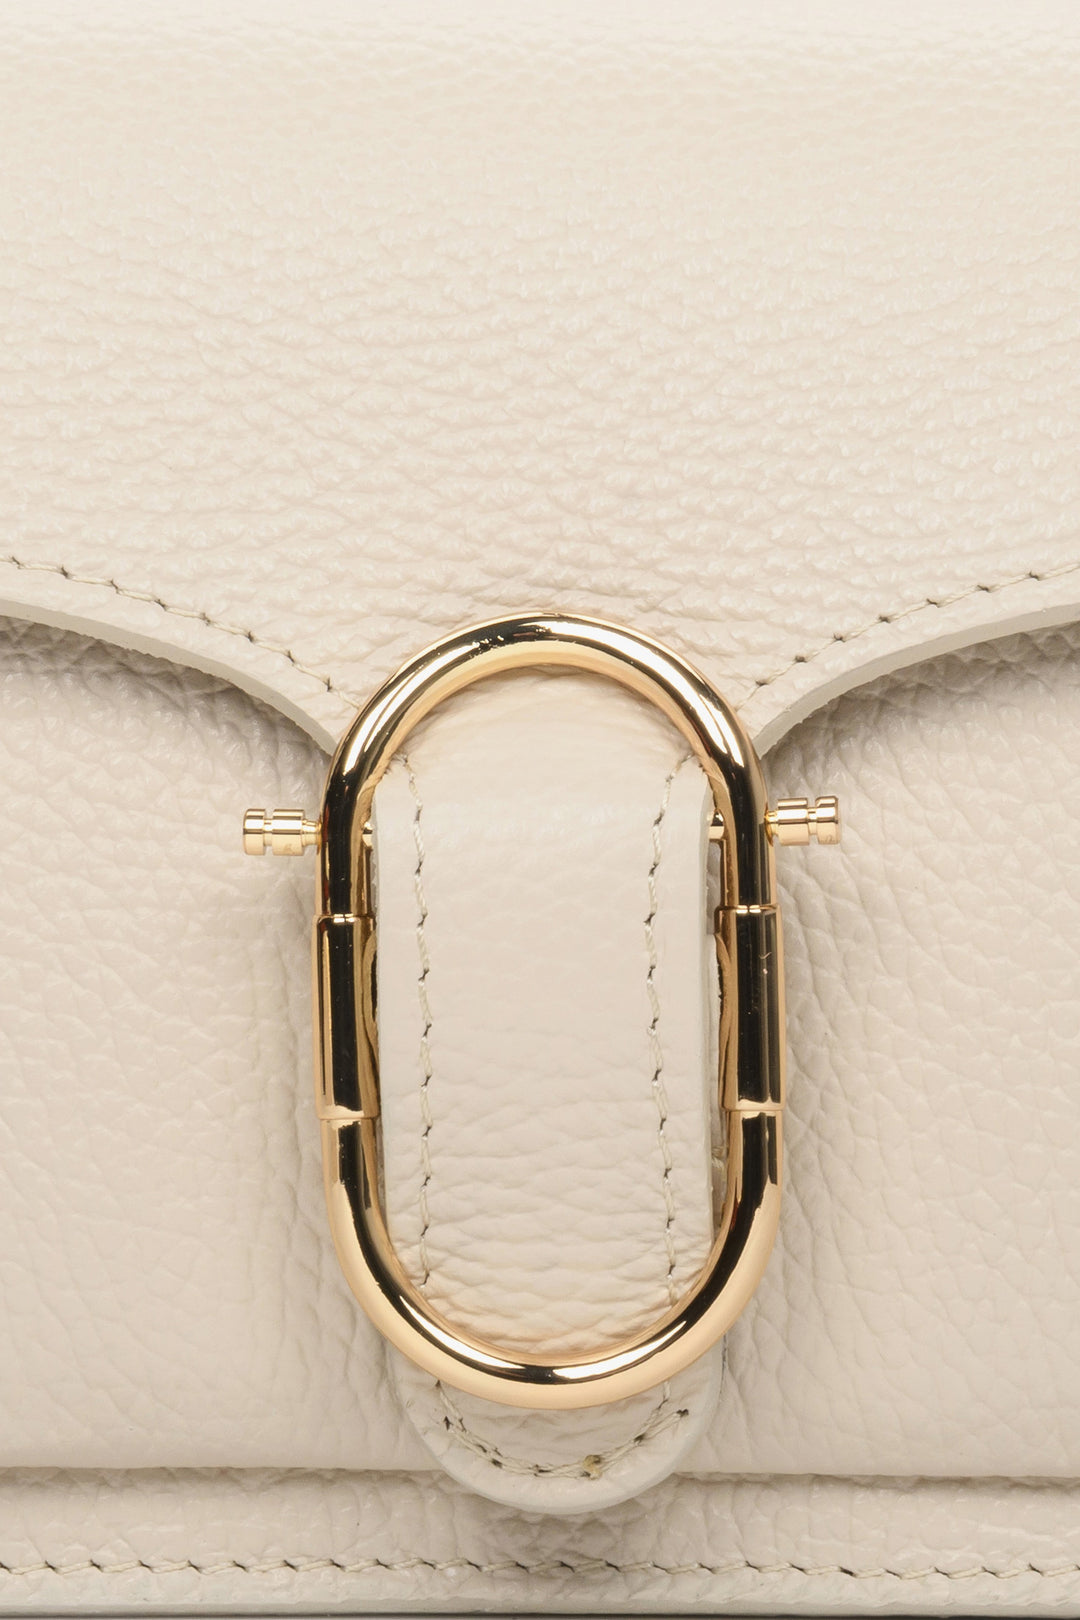 Small light beige women's handbag - close-up of gold application.